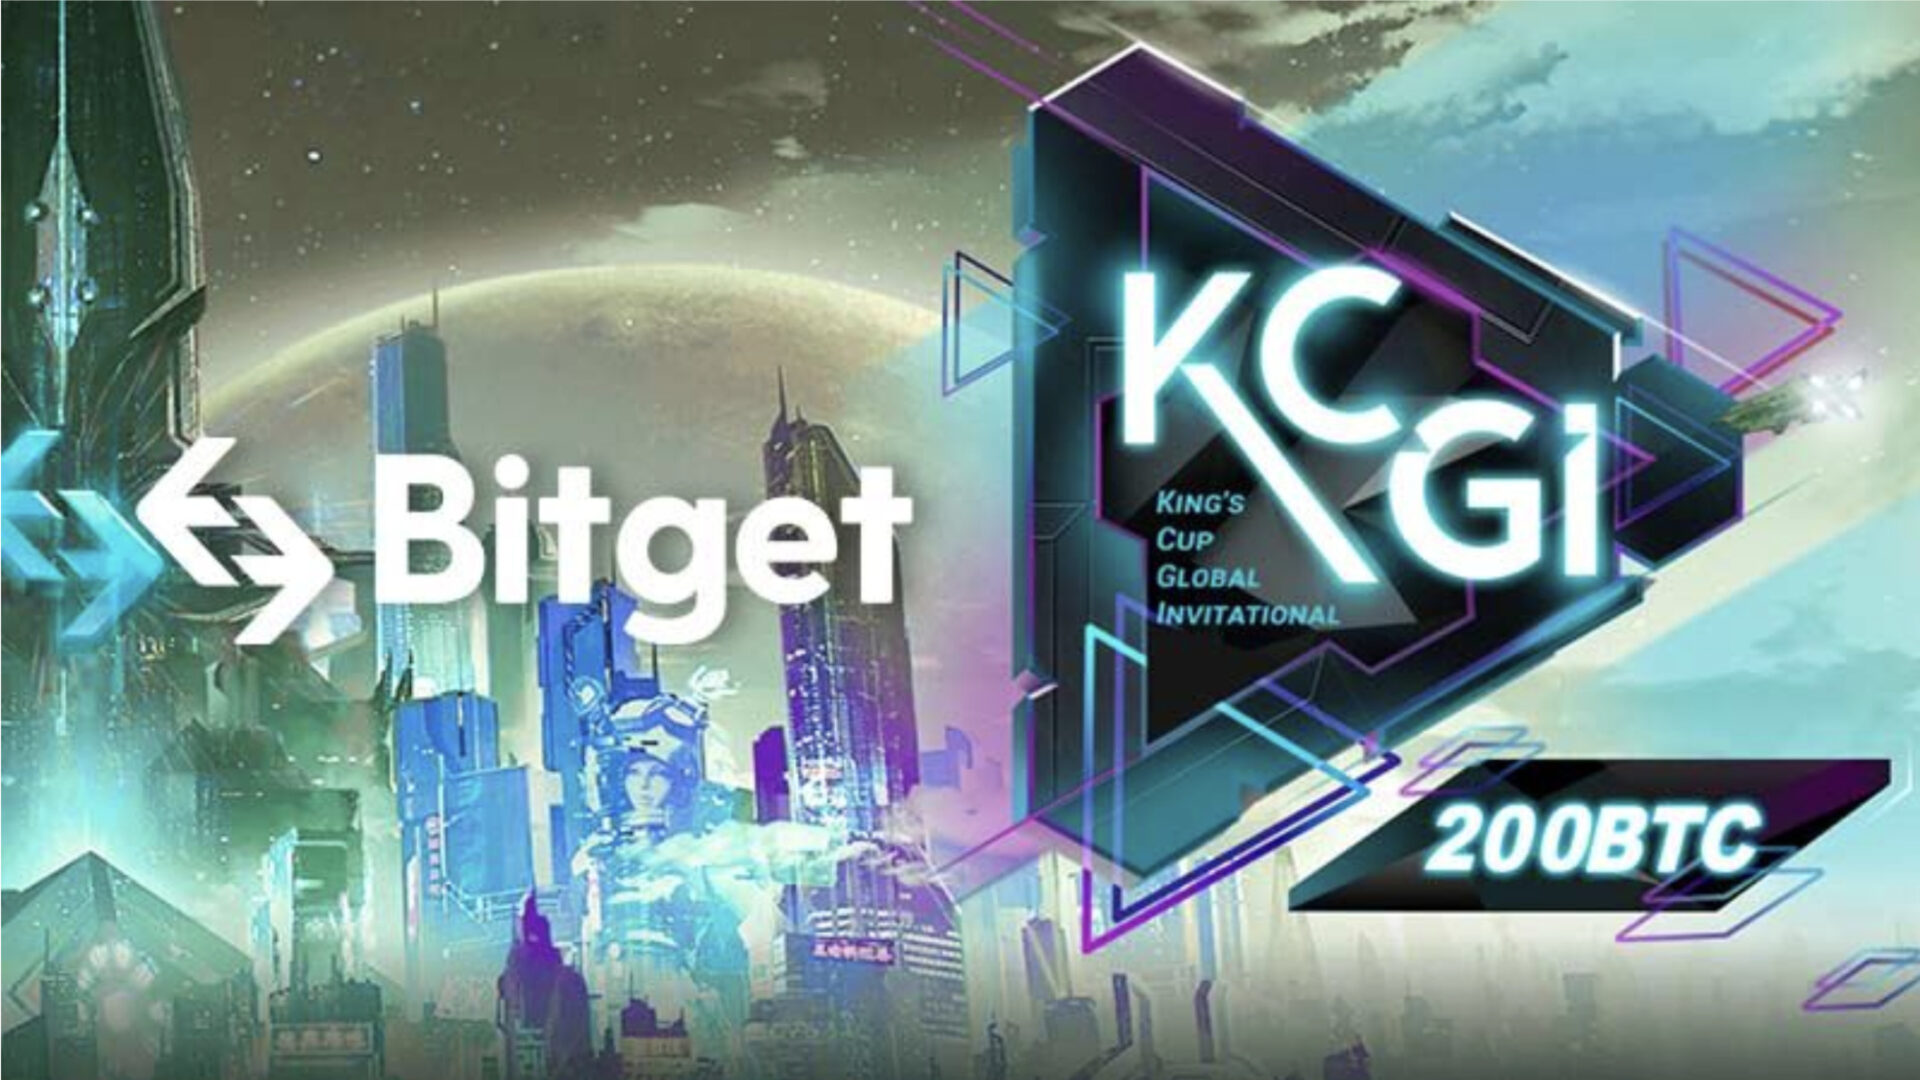 KCGI 2022開催期間中に、日本のBitgetユーザーを対象に複数の賞品が当たる限定キャンペーンを開催　最大50BGB、AirPods Proなど豪華賞品をプレゼント！